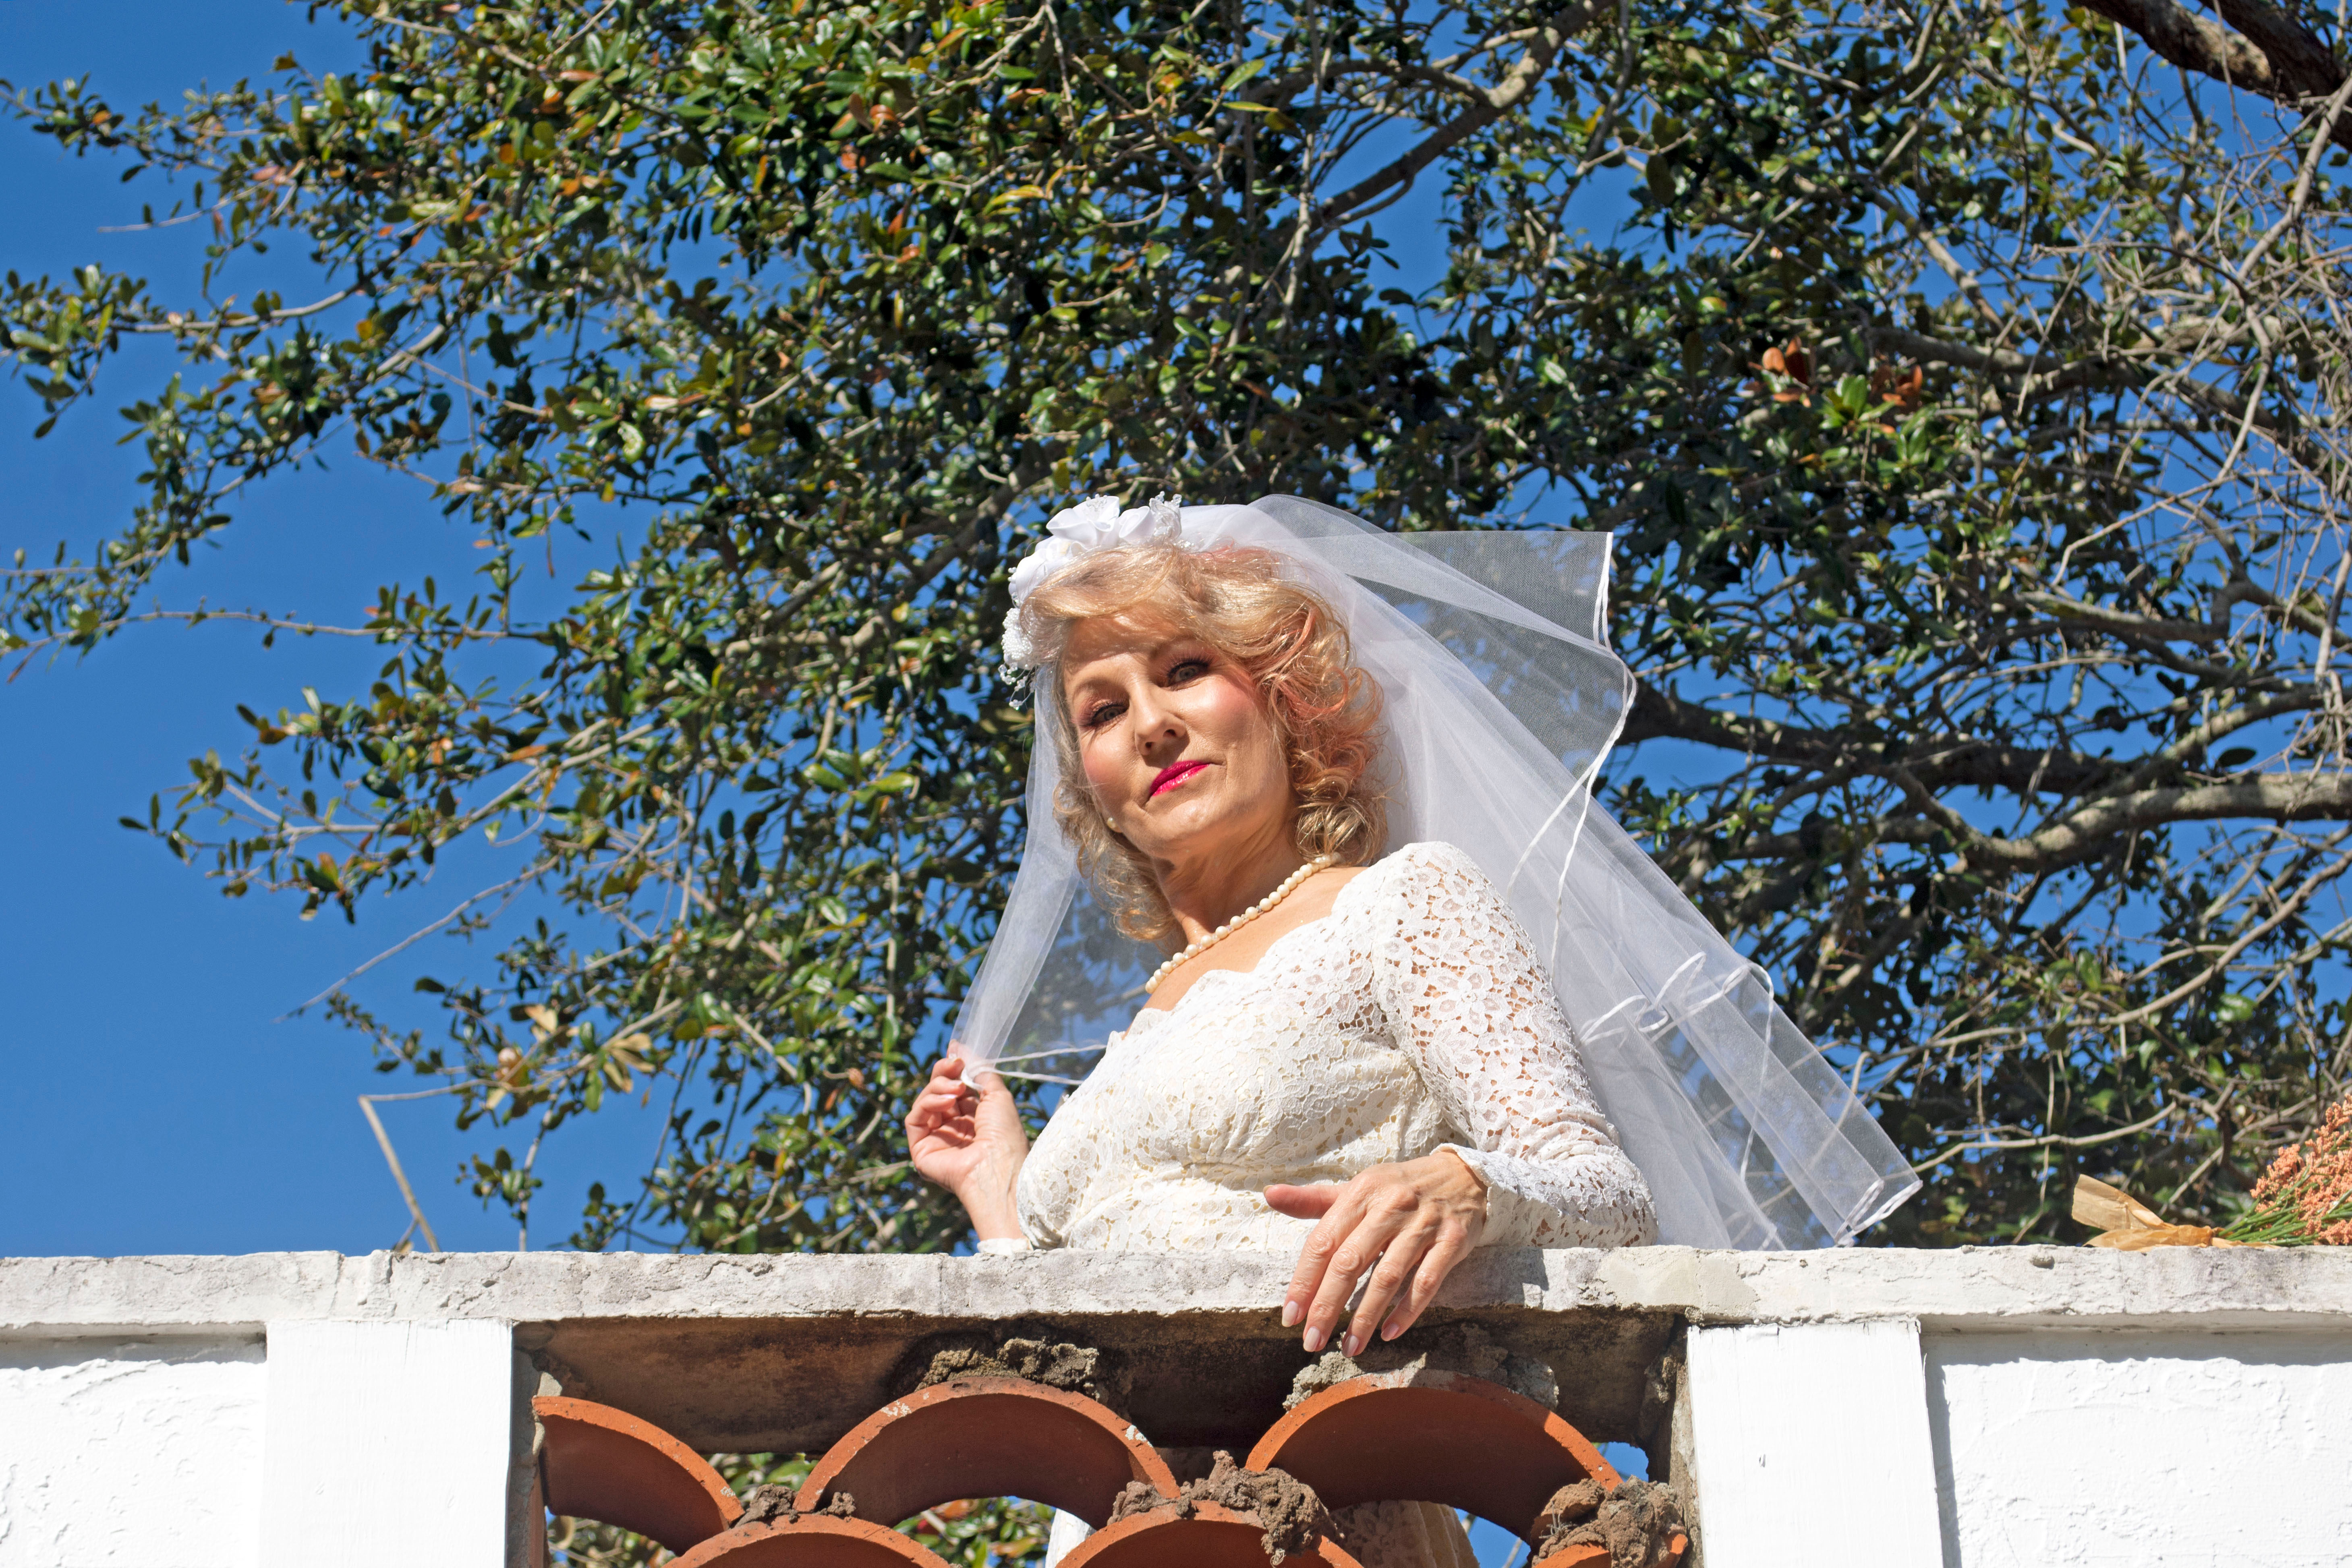 Older woman wearing wedding dress | Source: Shutterstock